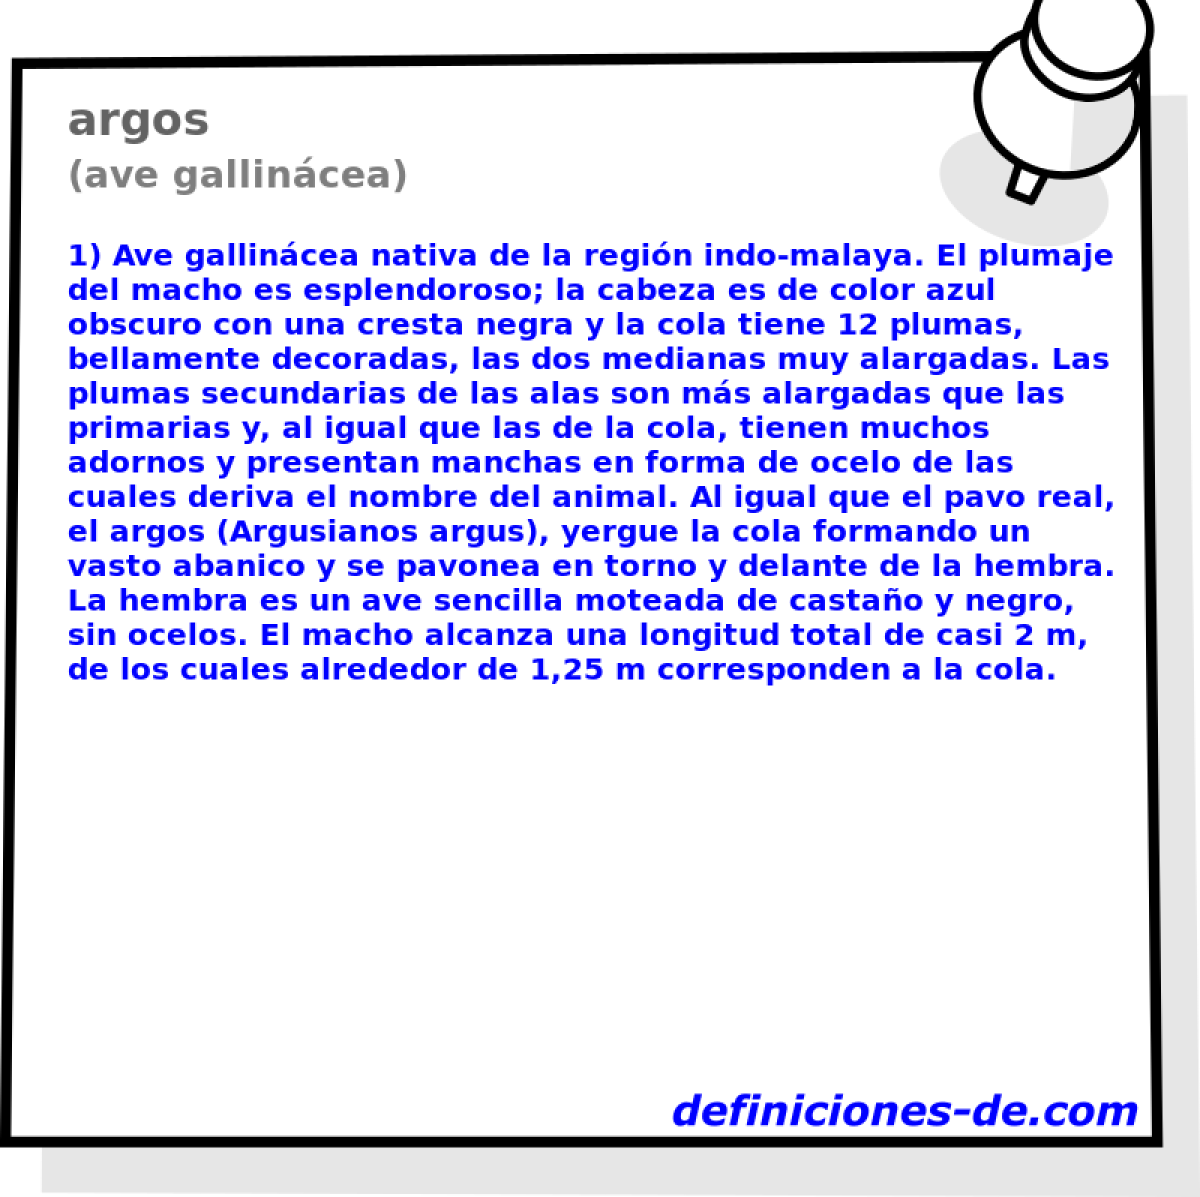 argos (ave gallincea)